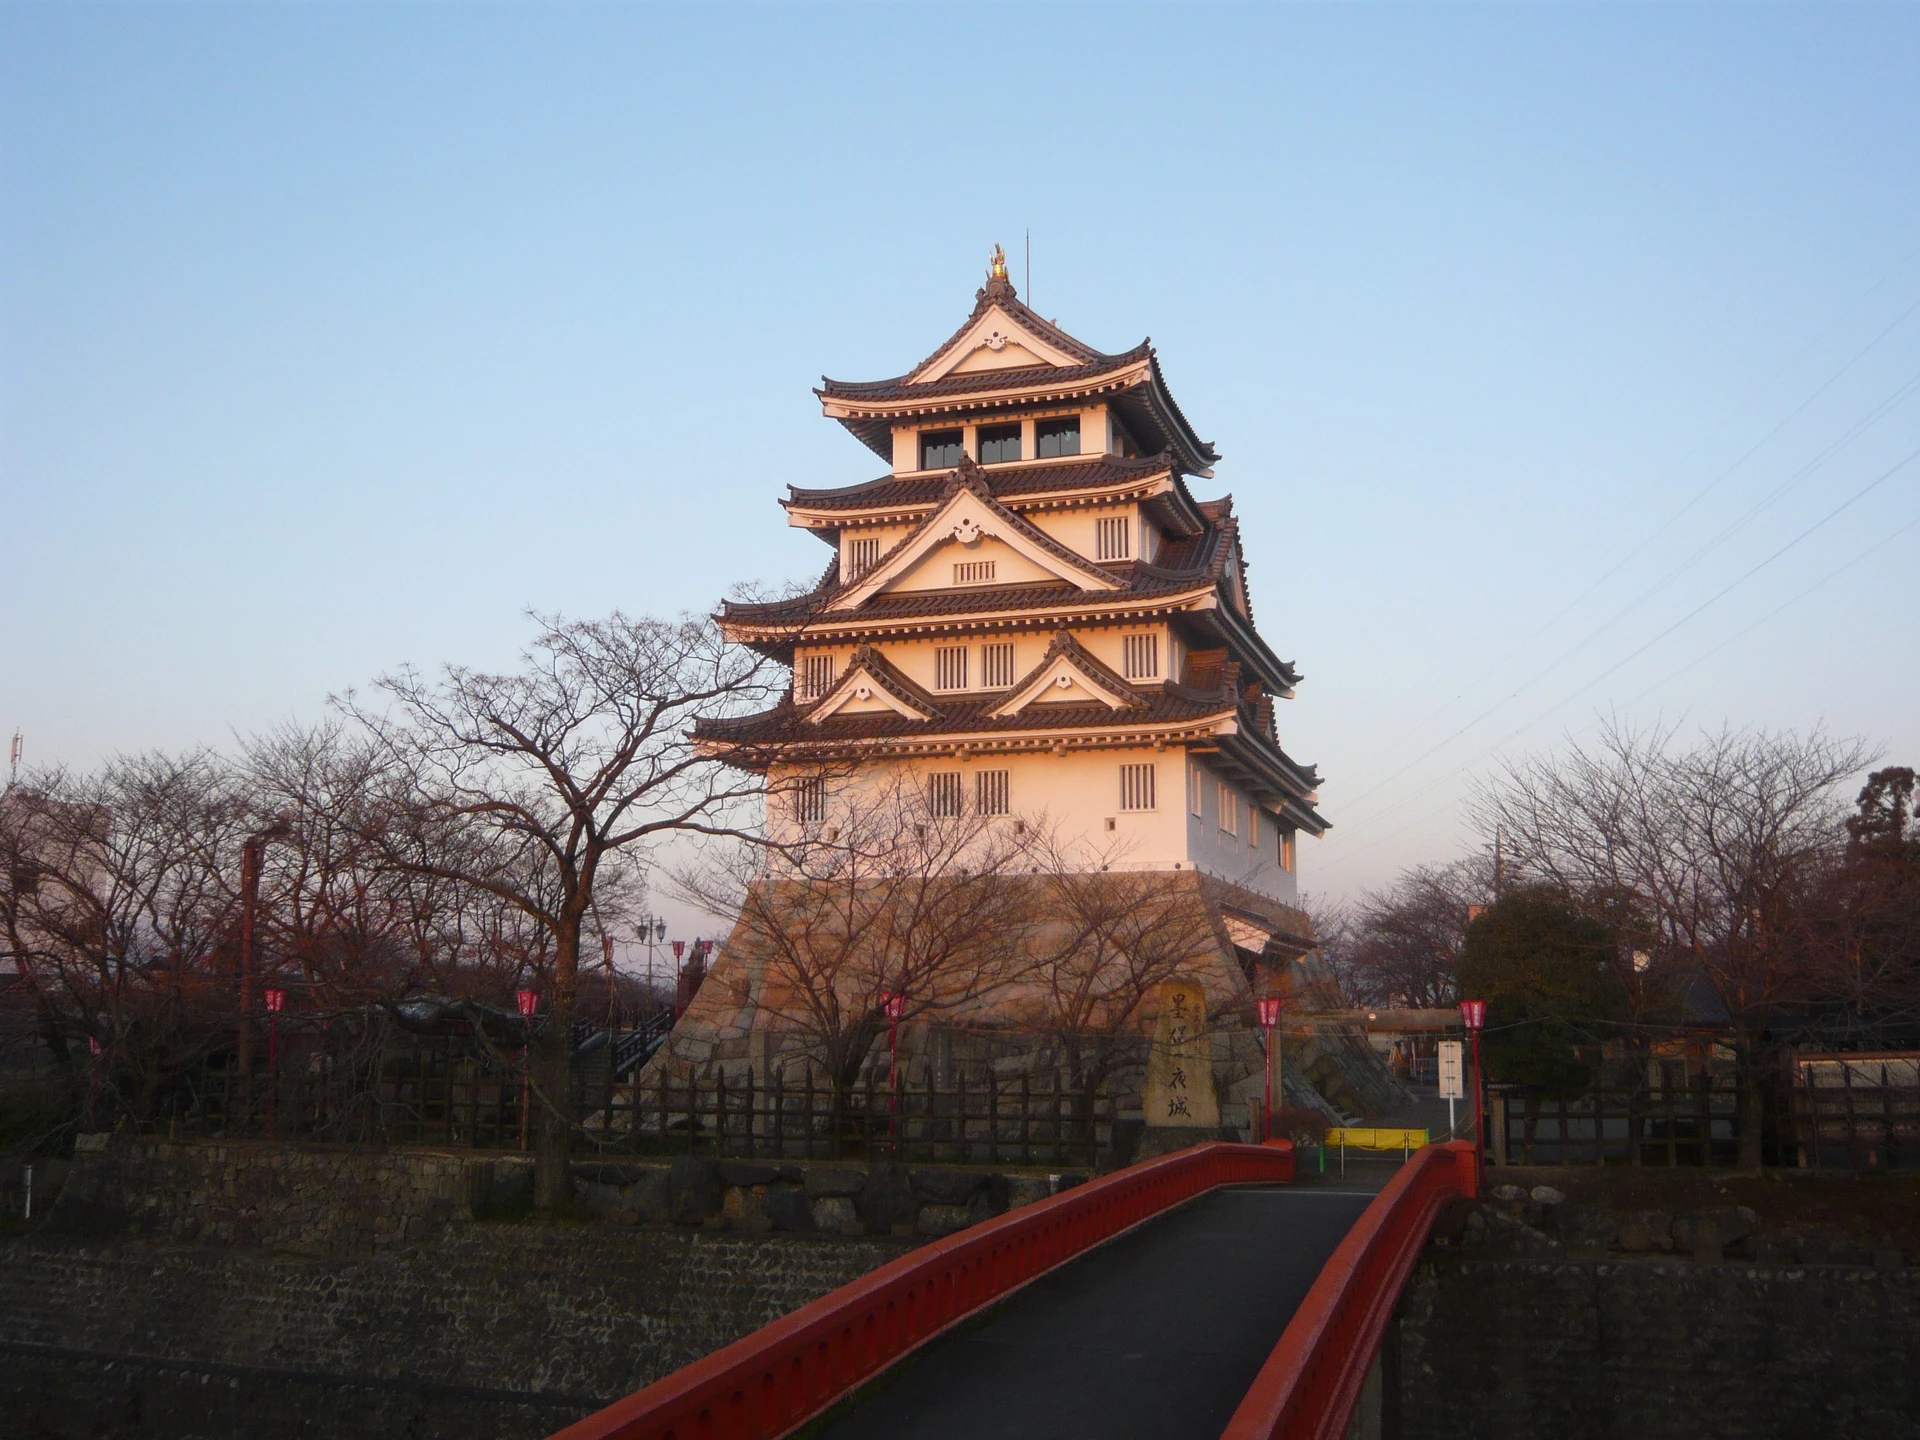 Lâu đài Sunomata (Gifu, Nhật Bản): Còn được biết đến với cái tên Ichiya, nghĩa là "lâu đài xây trong một đêm", Sunomata được xây dựng vào giữa thế kỷ 16 bởi tướng Toyotomi Hideyoshi tại thành phố Ogaki. Tương truyền, đây là một cứ điểm được âm thầm xây trong lòng đối thủ, bằng cách đẽo sẵn các cột và dựng sẵn vách, sau đó chuyển đến lắp ghép trong đêm. Lâu đài hiện tại được tái dựng năm 1991, theo hình mẫu của lâu đài Ogaki gần đó. Ảnh: Hide-sp.